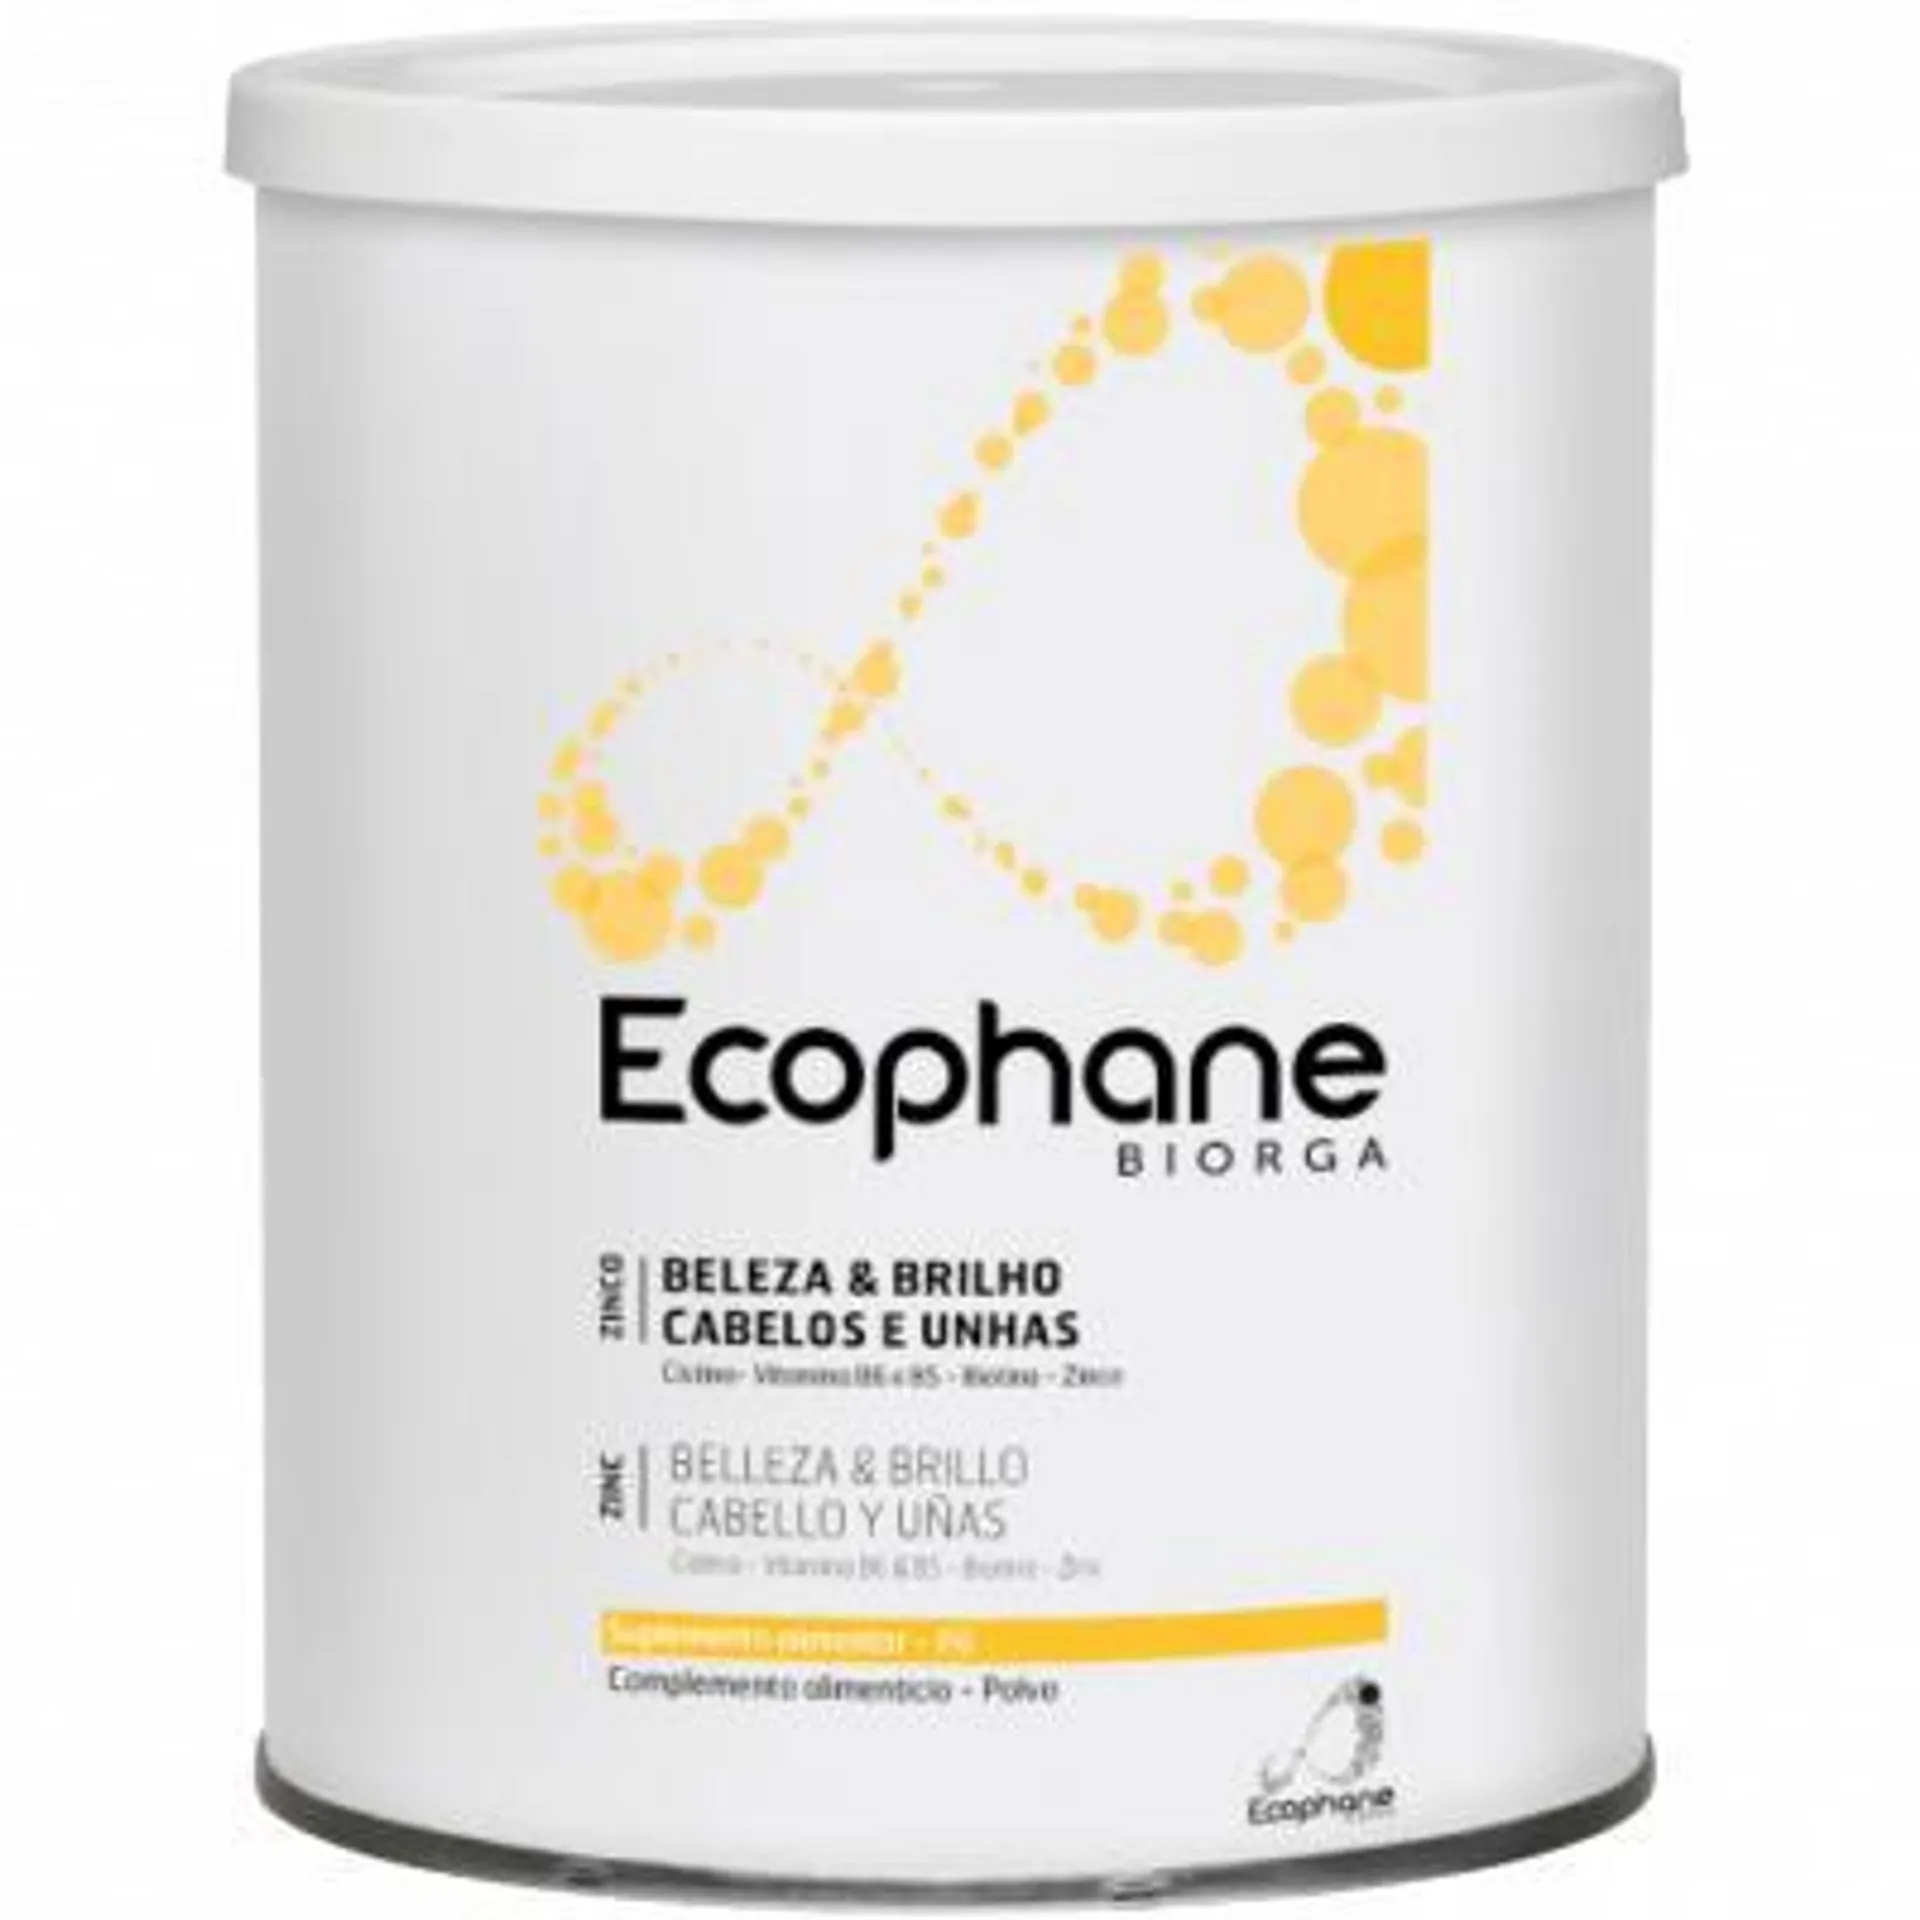 Ecophane Pó 90 doses (318 g)